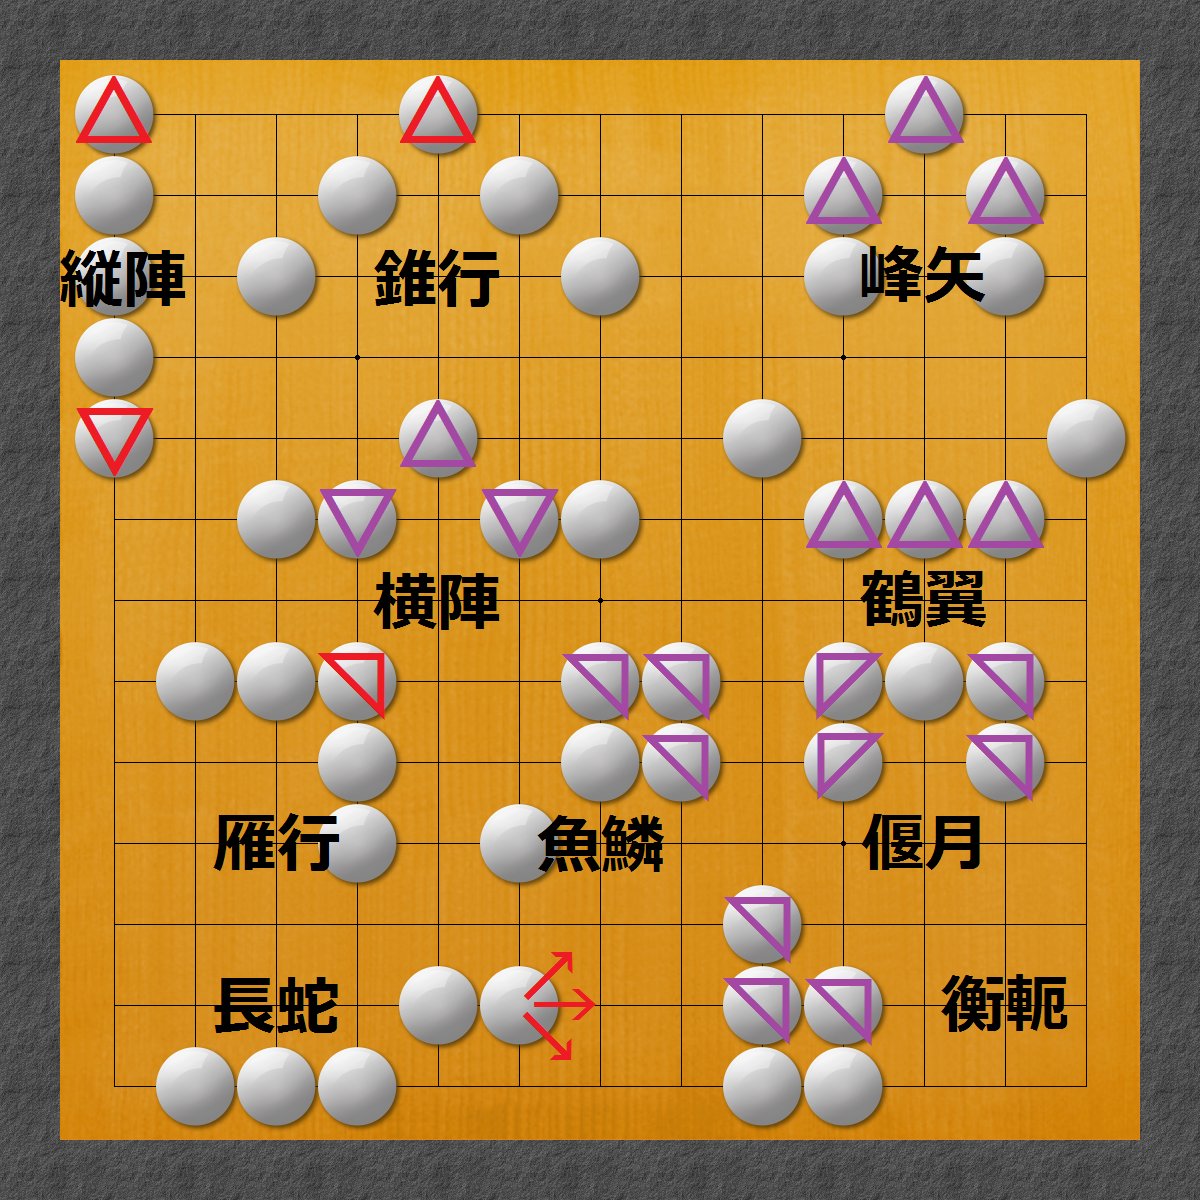 たまトワ 陣形棋師家 日本の伝統的なボードゲームは陣形棋です